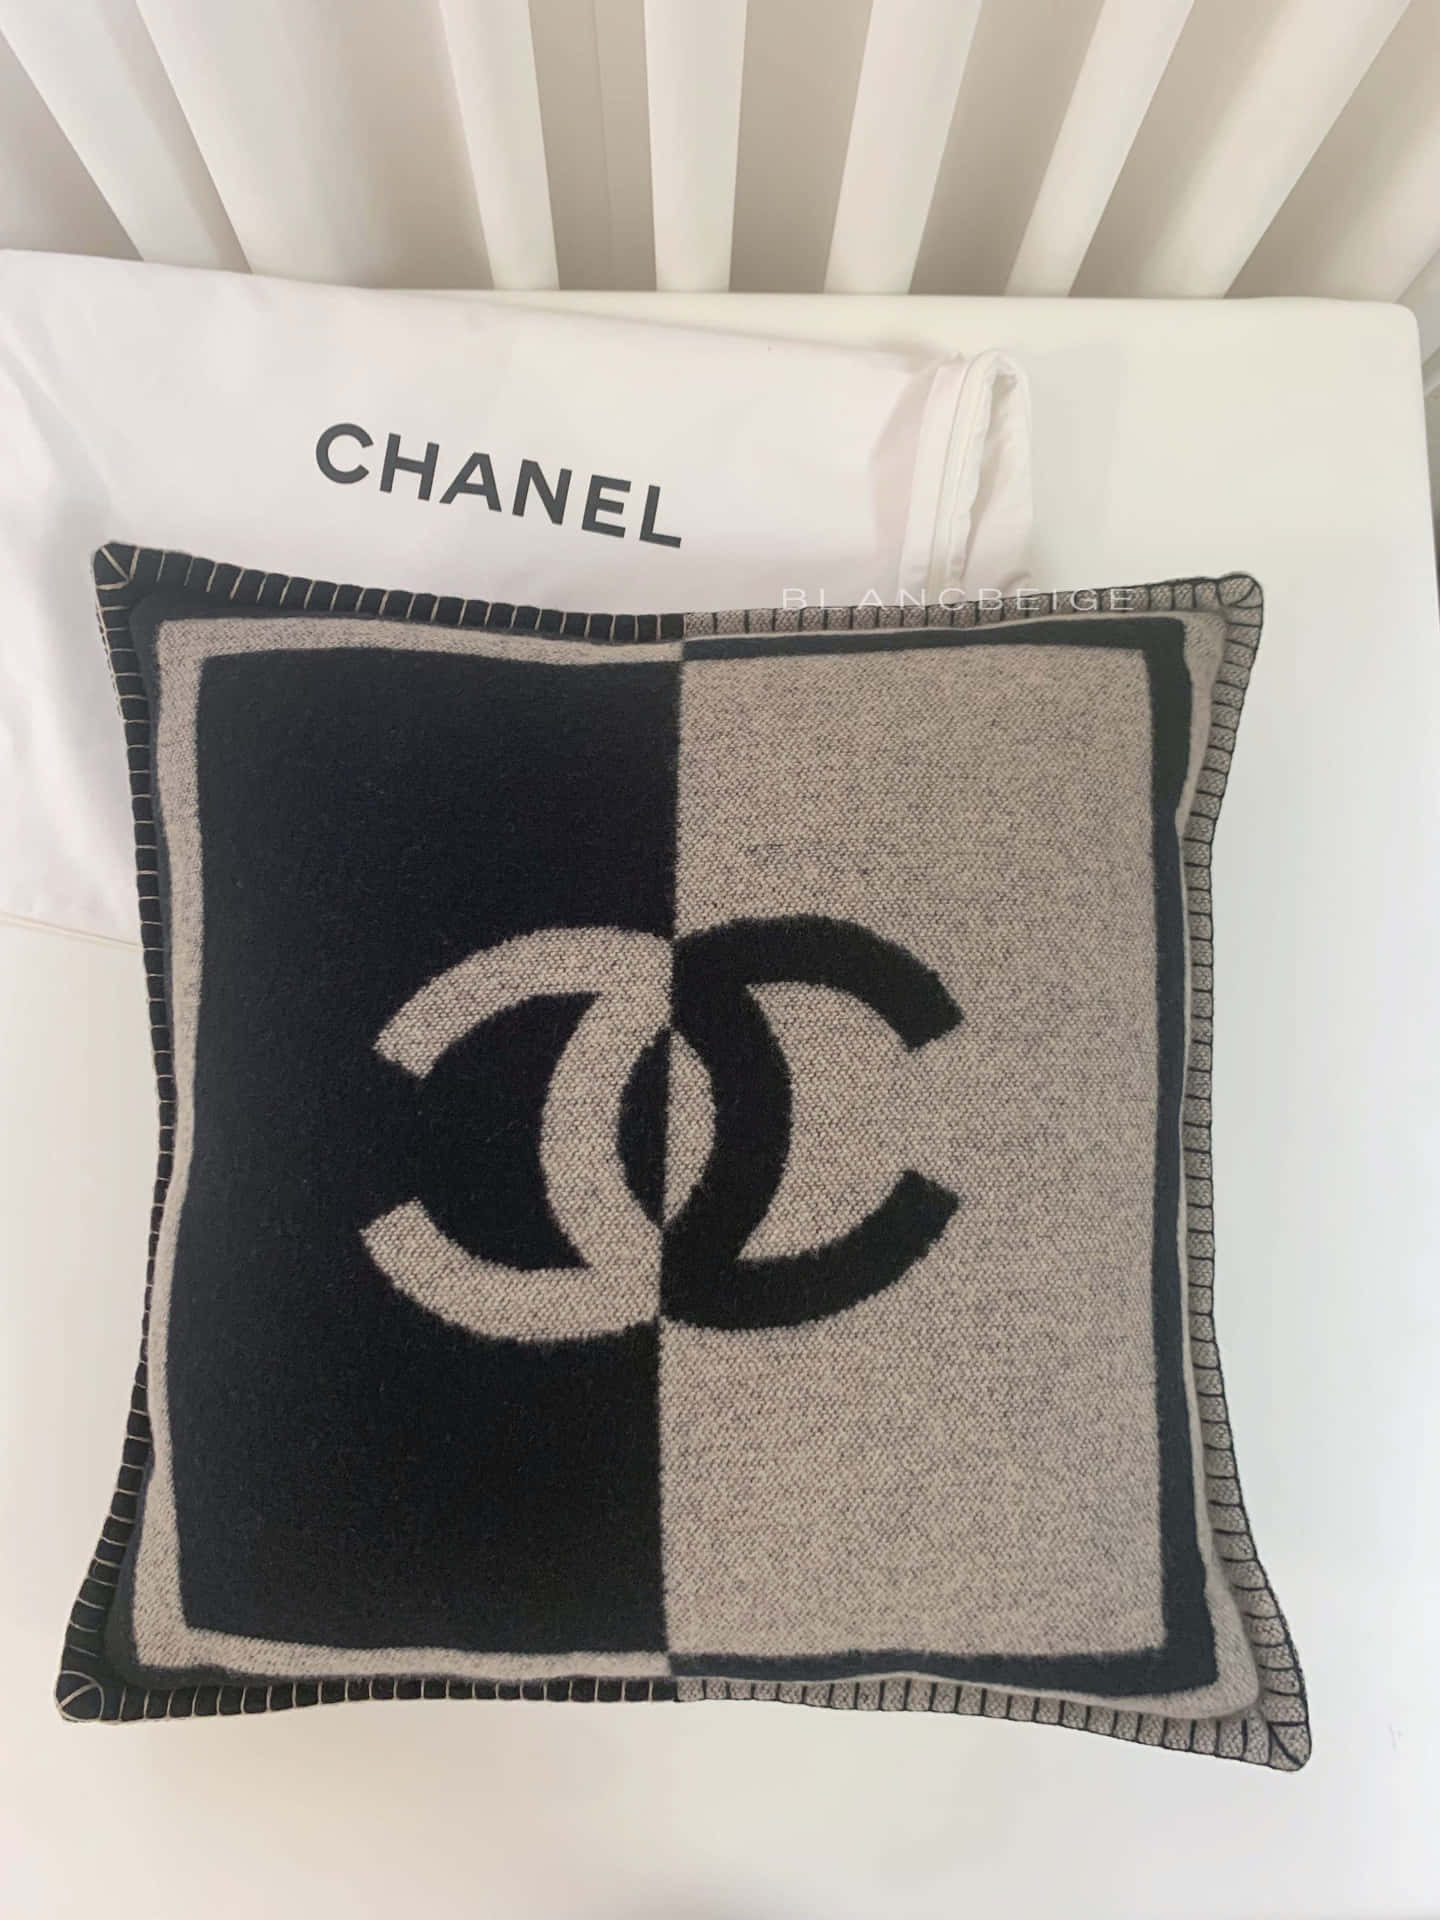 L'iconicologo Di Chanel